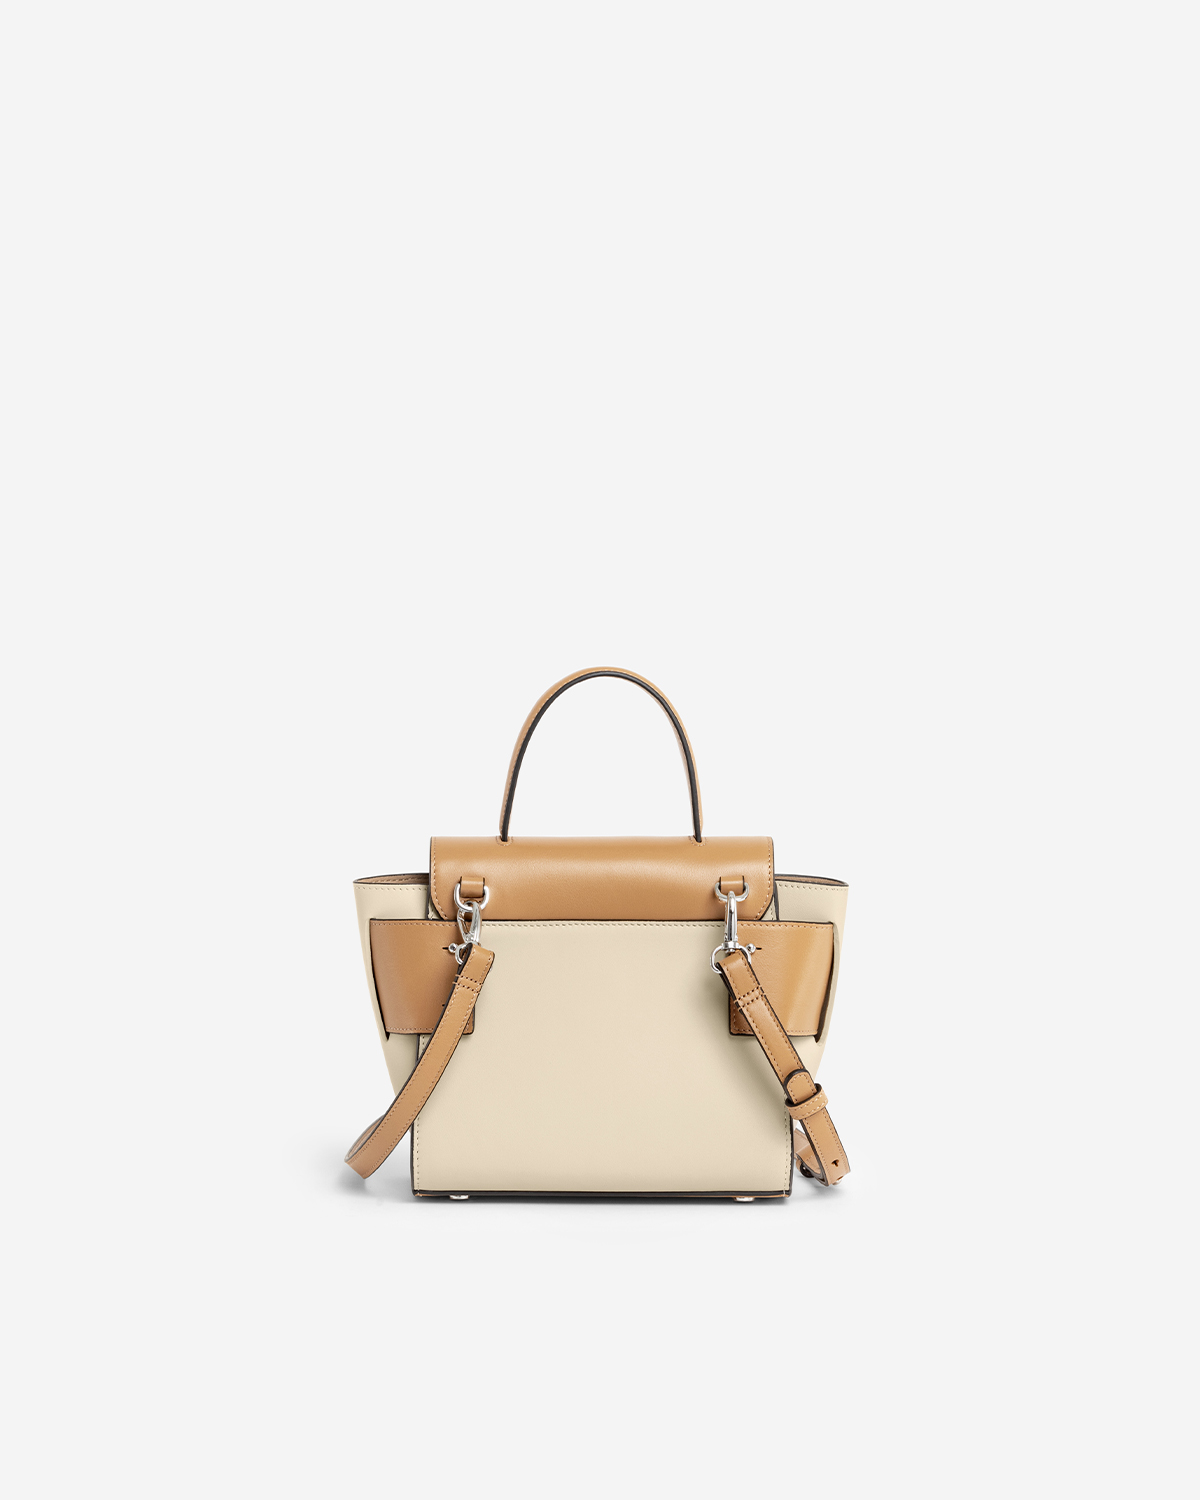 VERA Margo Leather Handbag, Size 20 in Beige Butterscotch